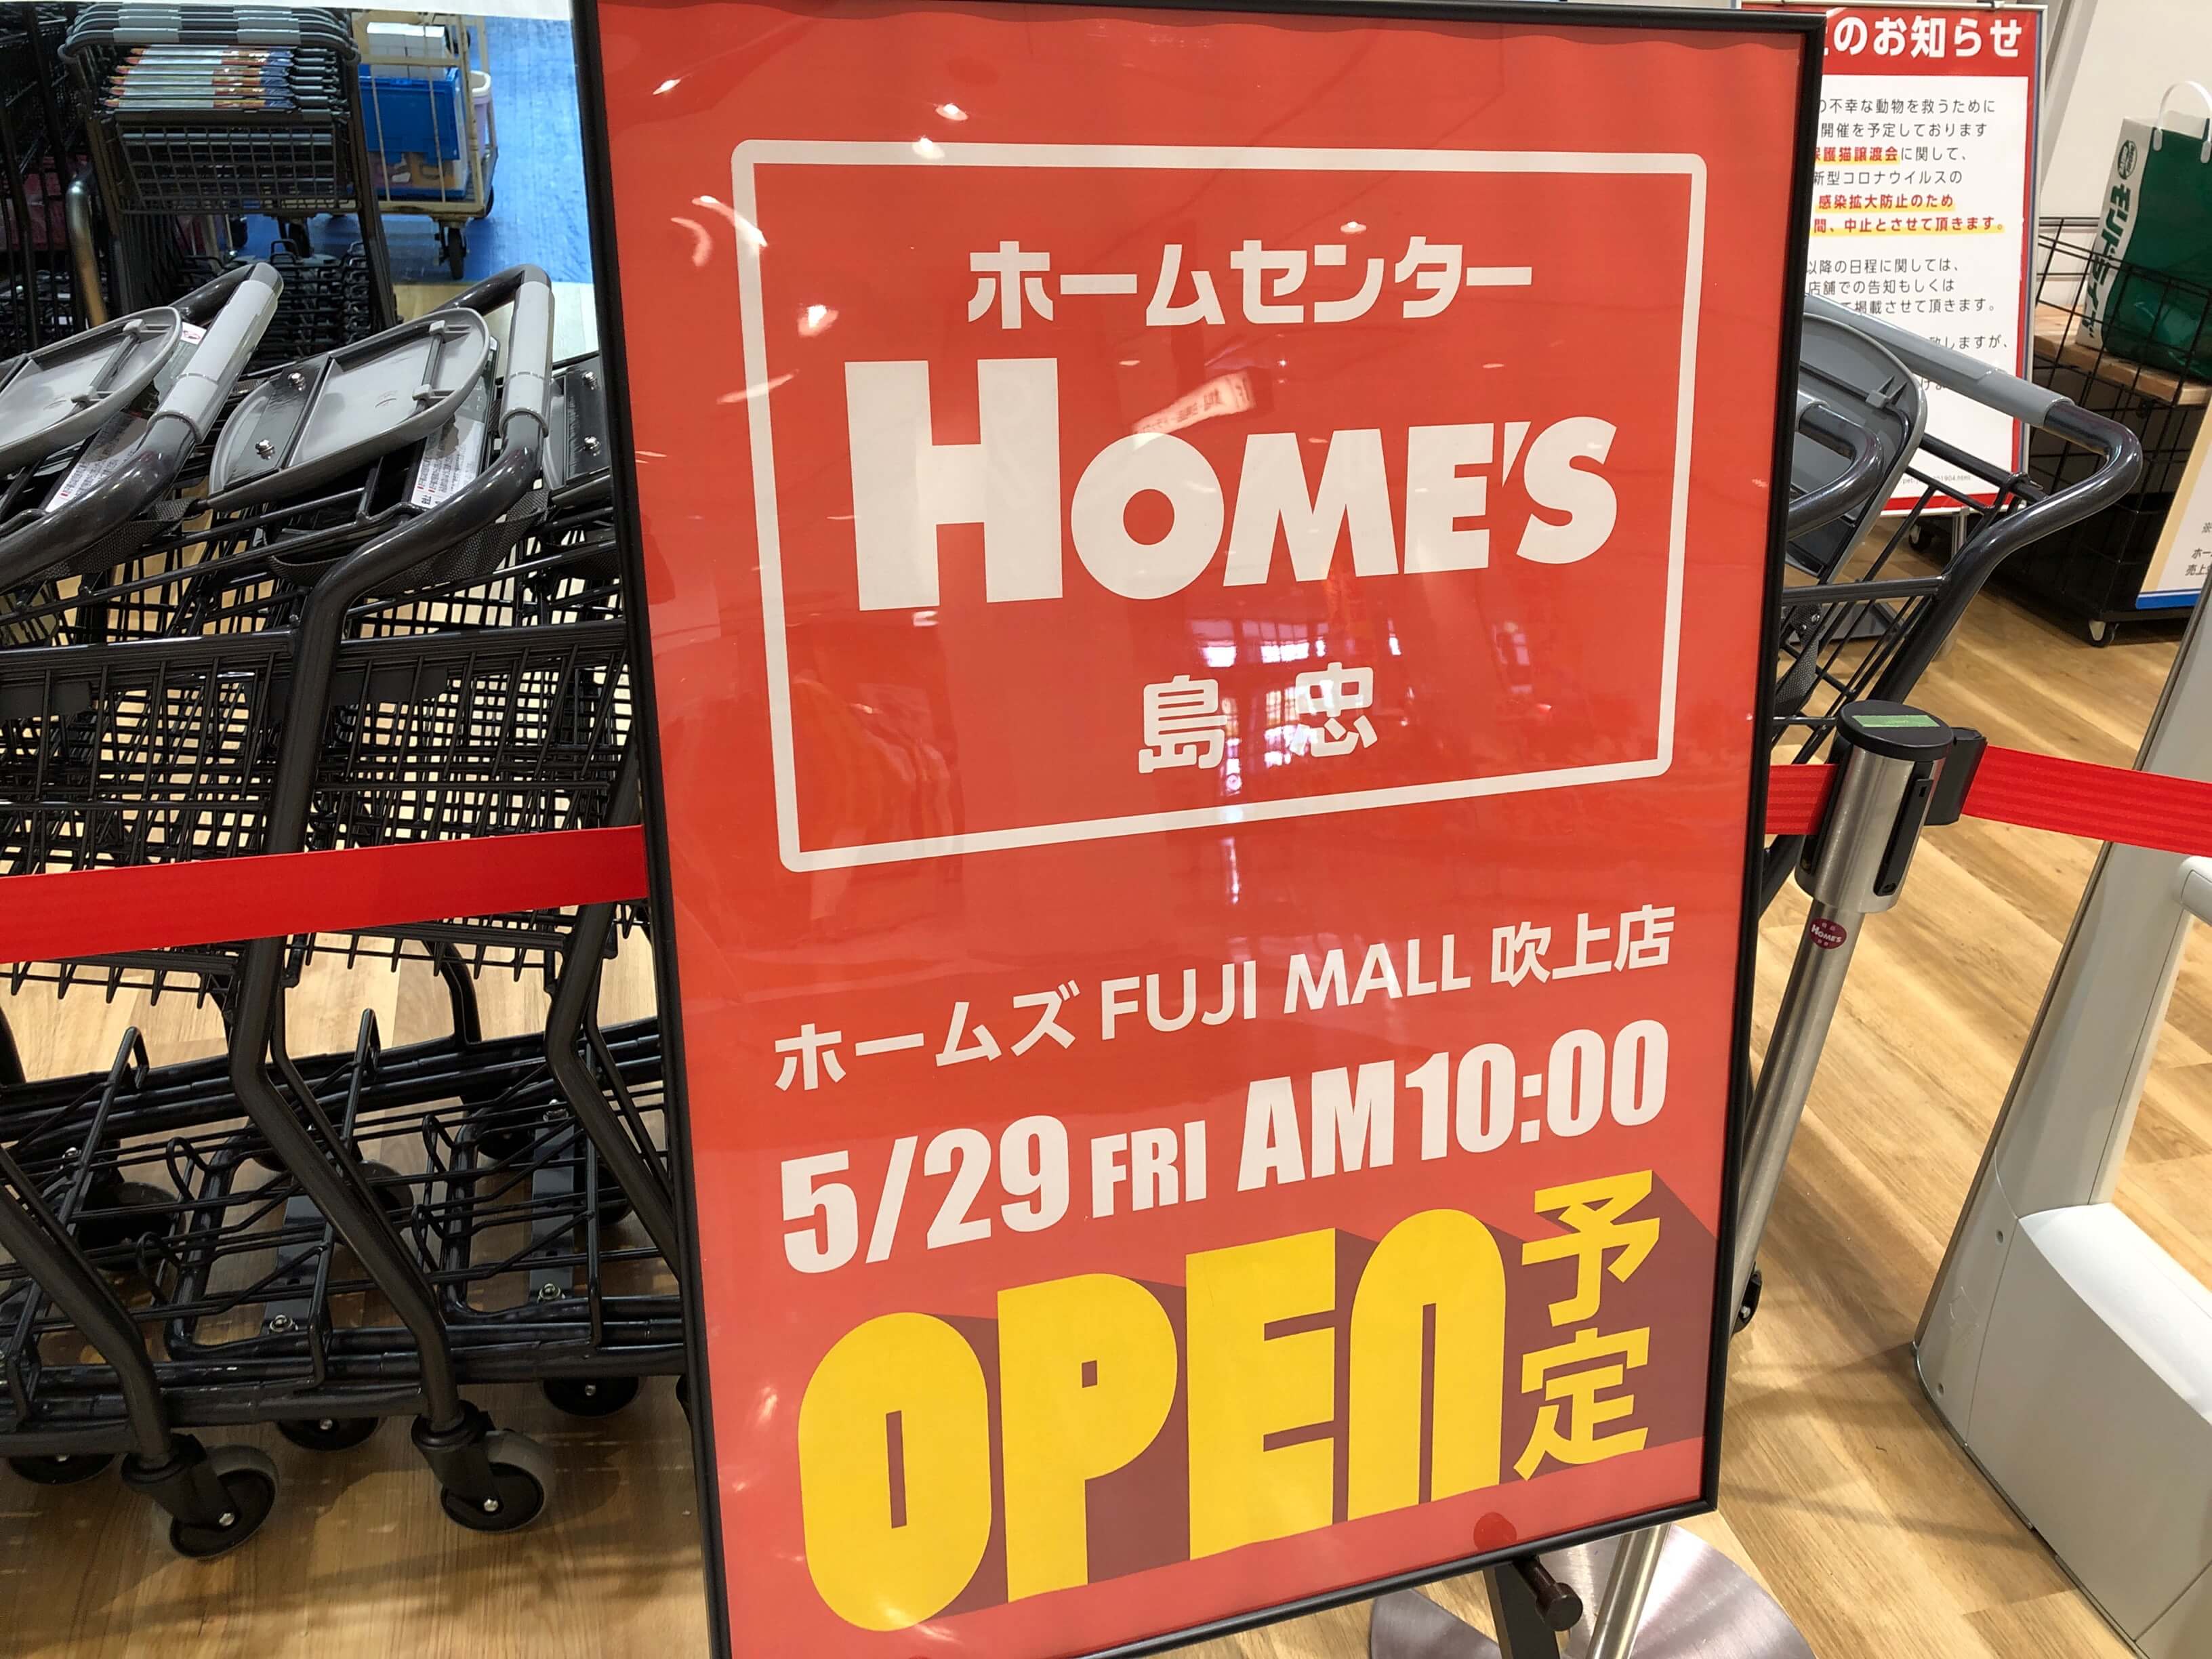 鴻巣のフジモール1階に 島忠ホームズ 吹上店 が5月29日ニューオープン さいたまっぷる